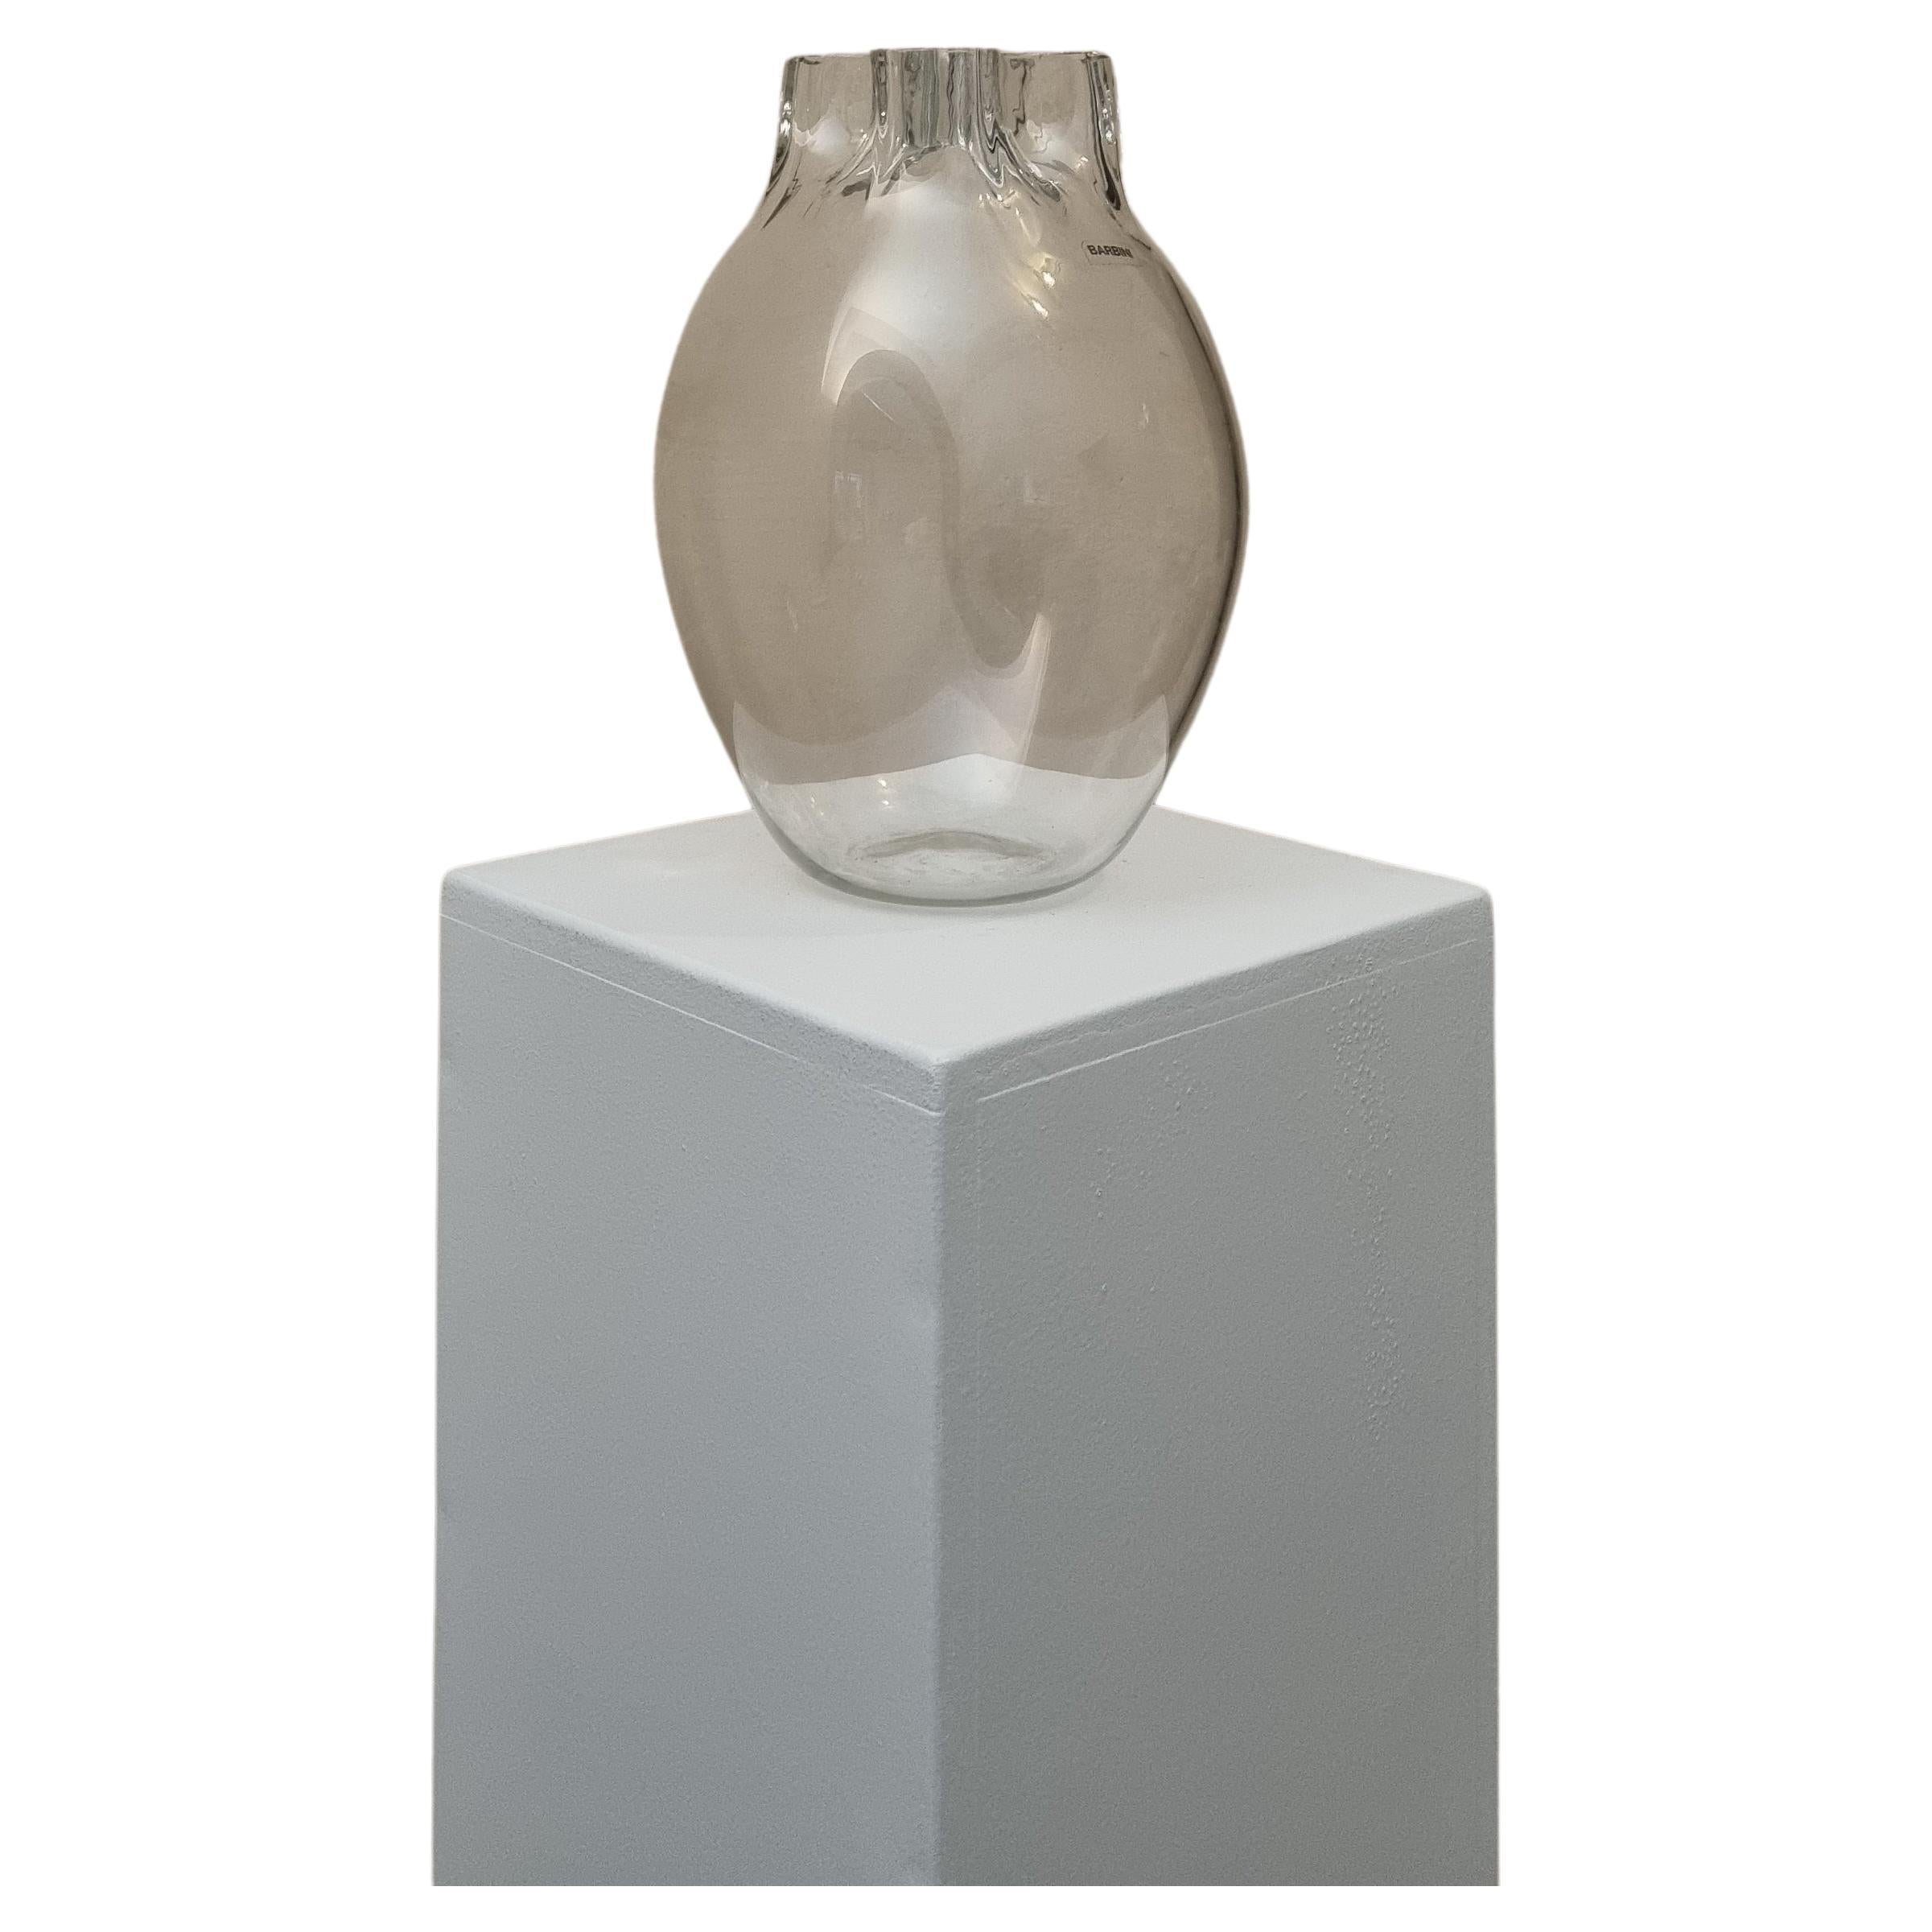 Pflanzgefäß aus Glas, hergestellt von Alfredo Barbini für Vetreria Barbini, Murano, 70er-Jahre